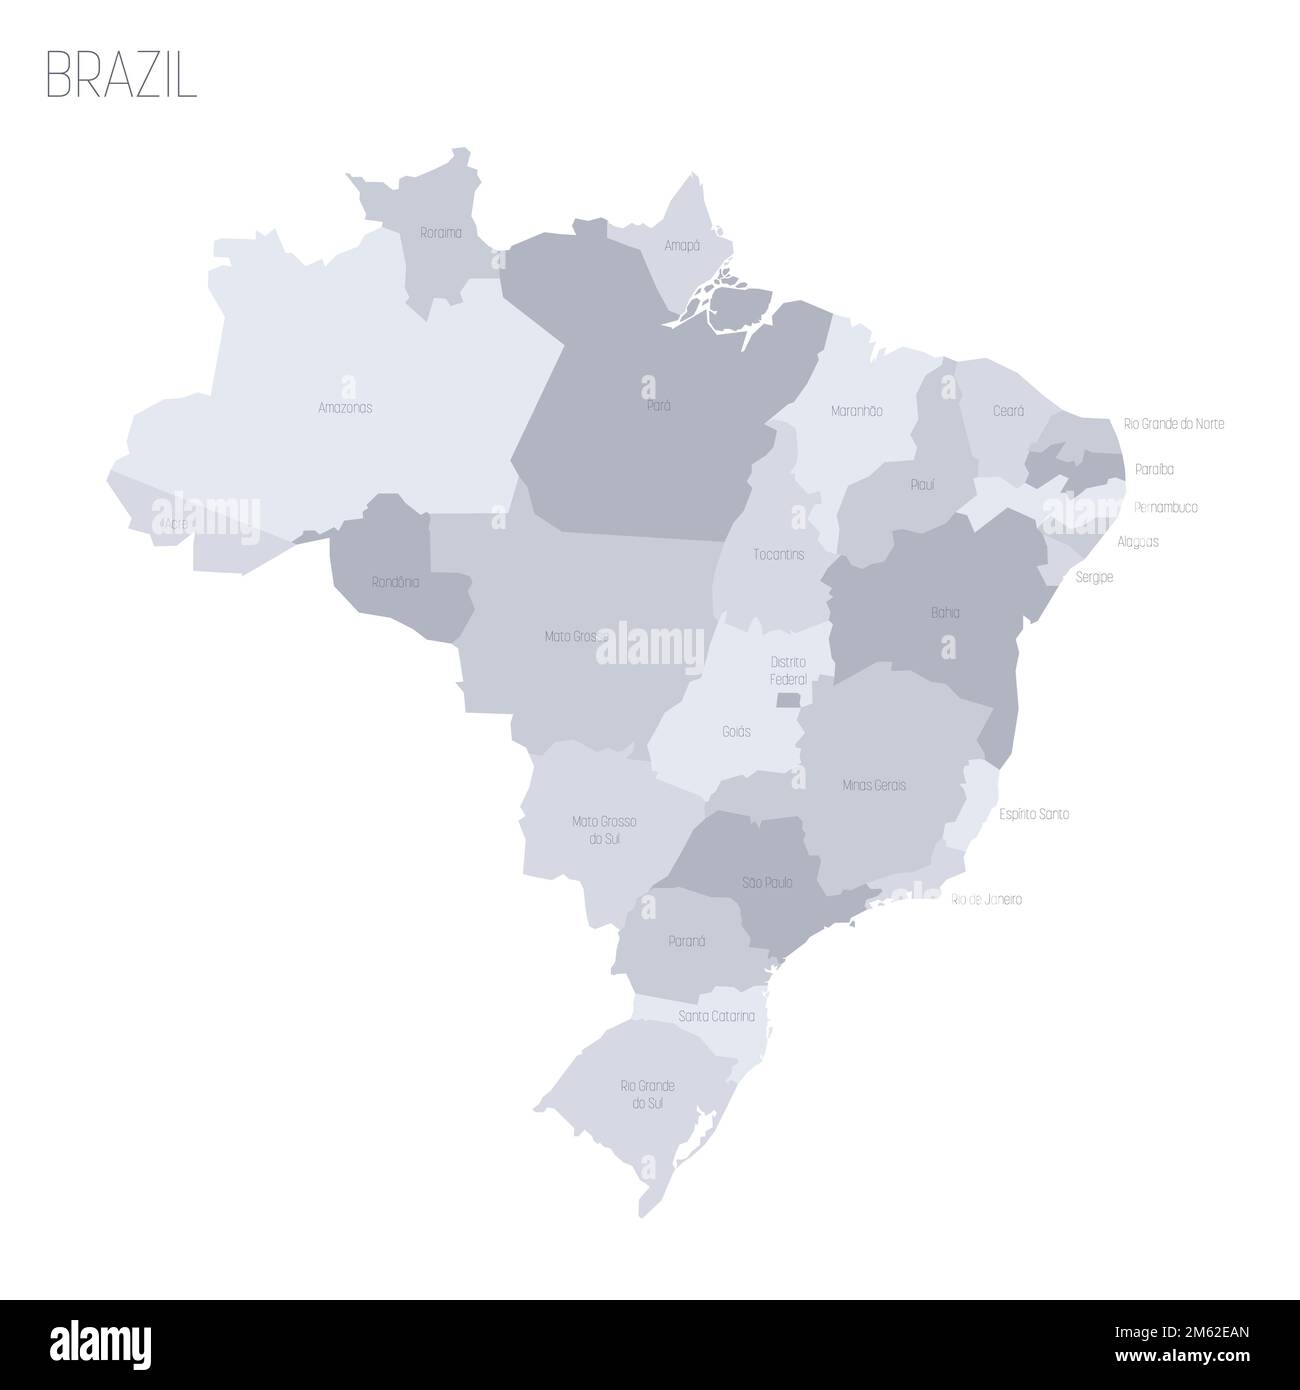 Politische Karte Brasiliens der Verwaltungsabteilungen - Föderative Einheiten Brasiliens. Graue Vektorkarte mit Beschriftungen. Stock Vektor